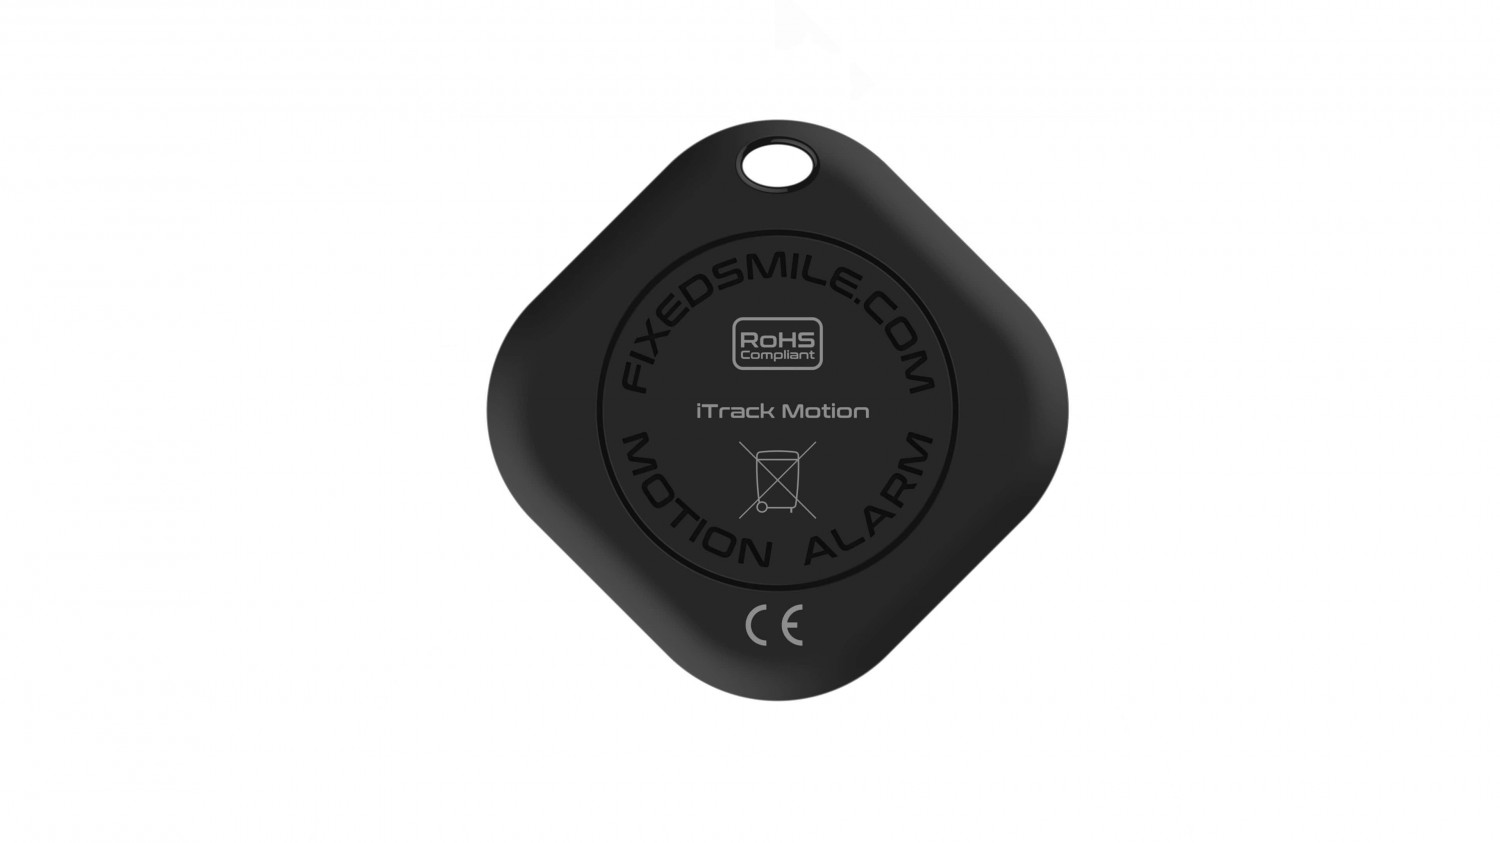 Key finder FIXED Smile s motion senzorem, DUO PACK - černý + šedý